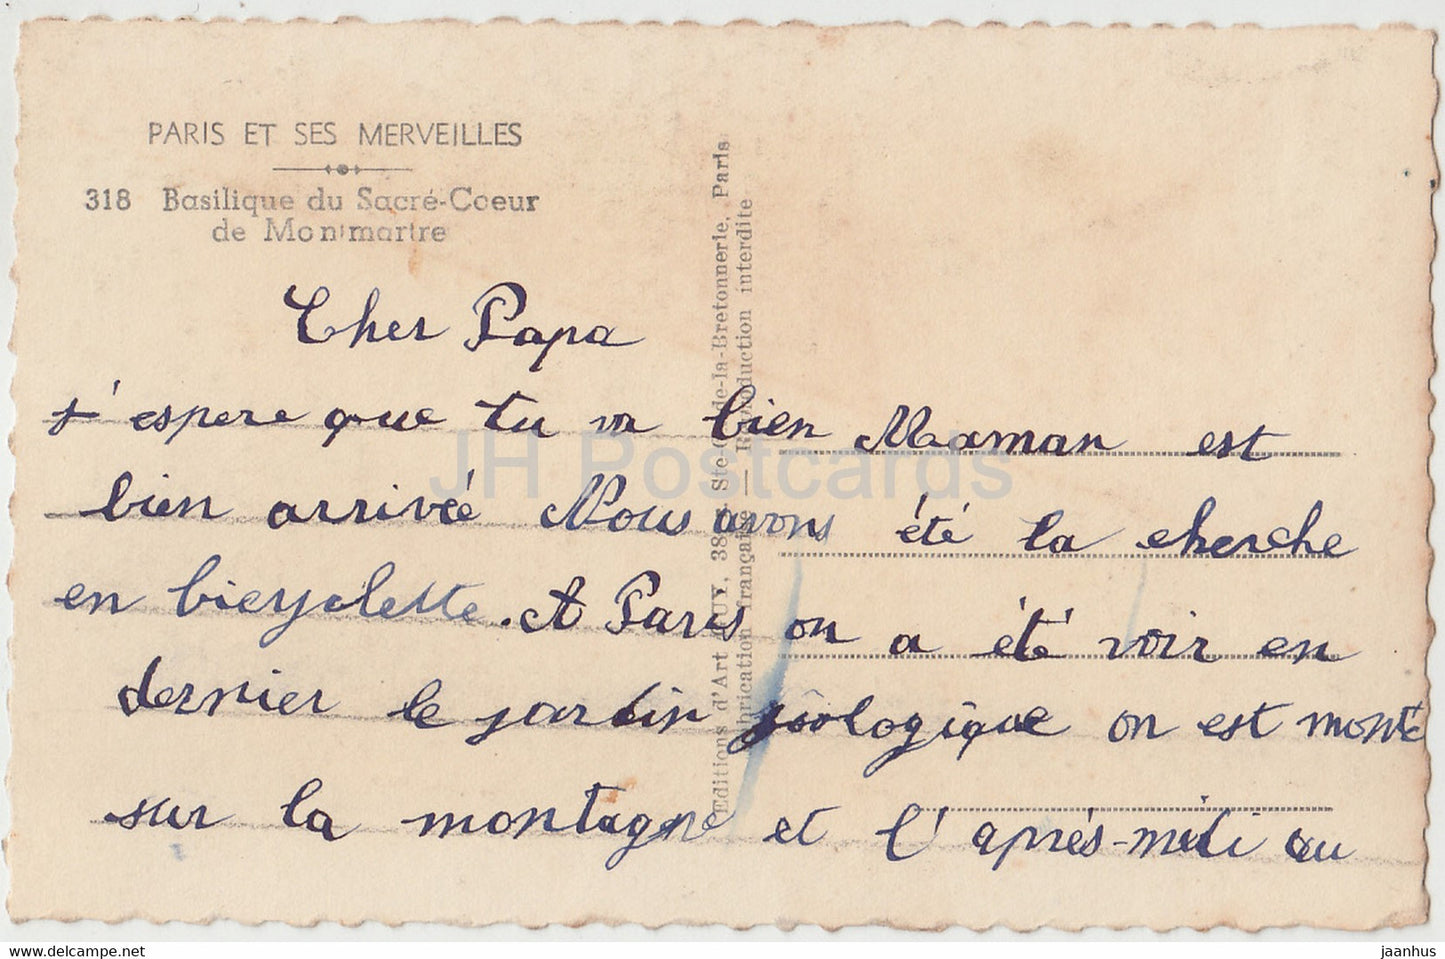 Paris - Basilique du Sacre Coeur de Montmartre - cathedral - 318 - old postcard - France - used